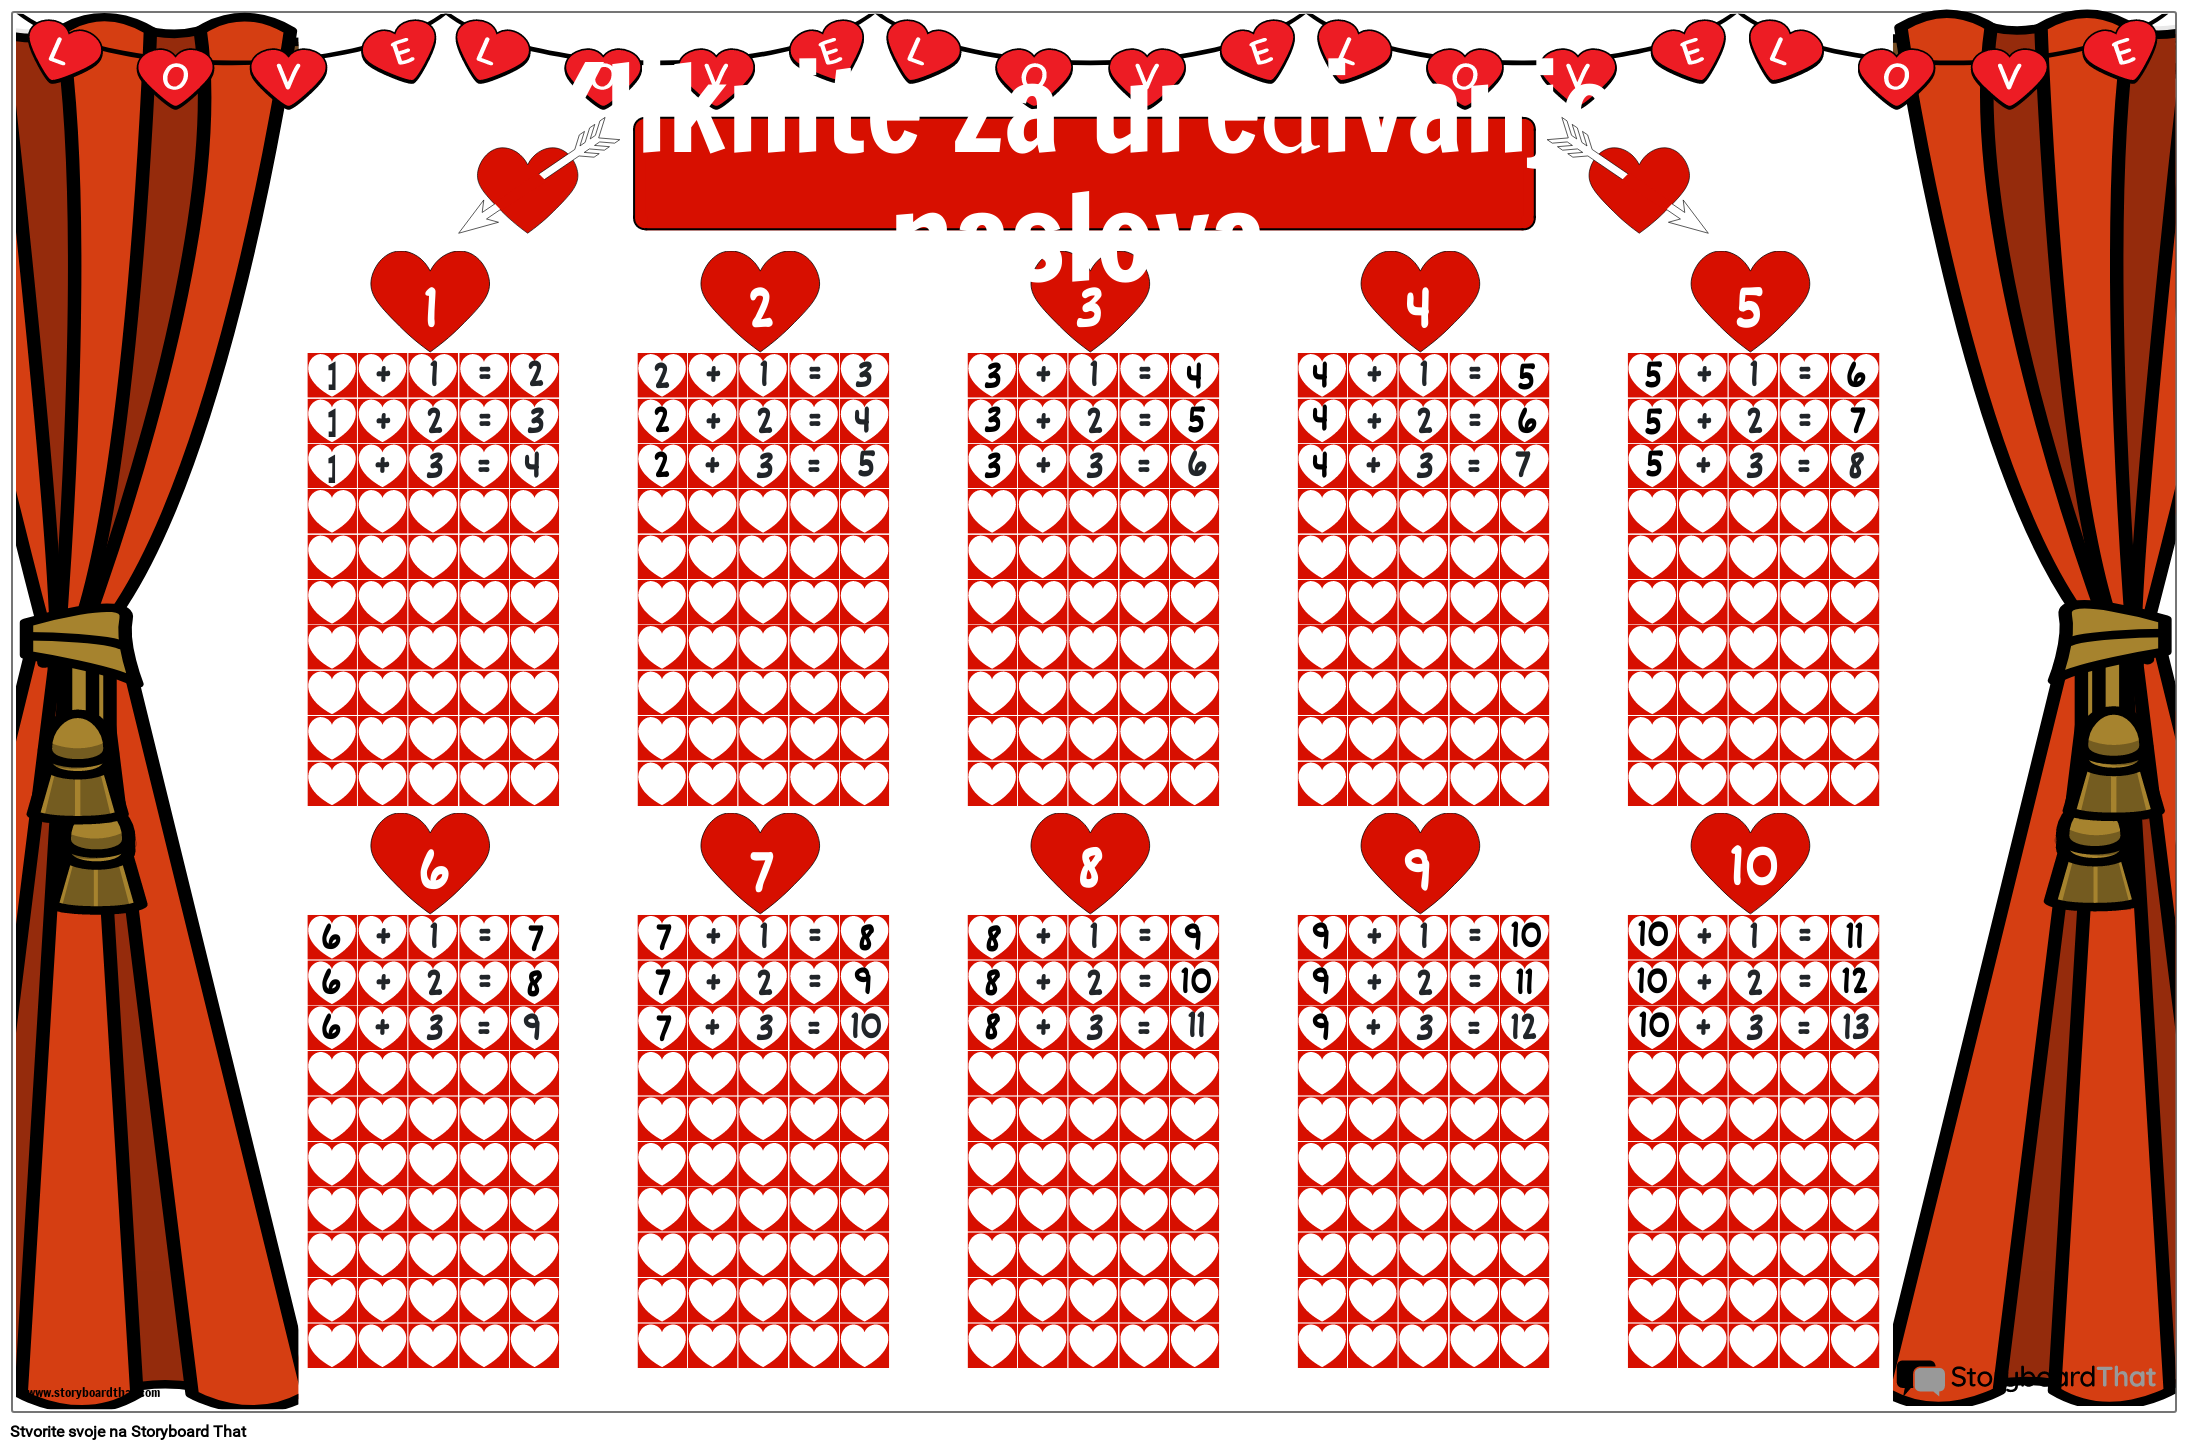 Poster s tablicama zbrajanja s motivima srca za besplatni ispis